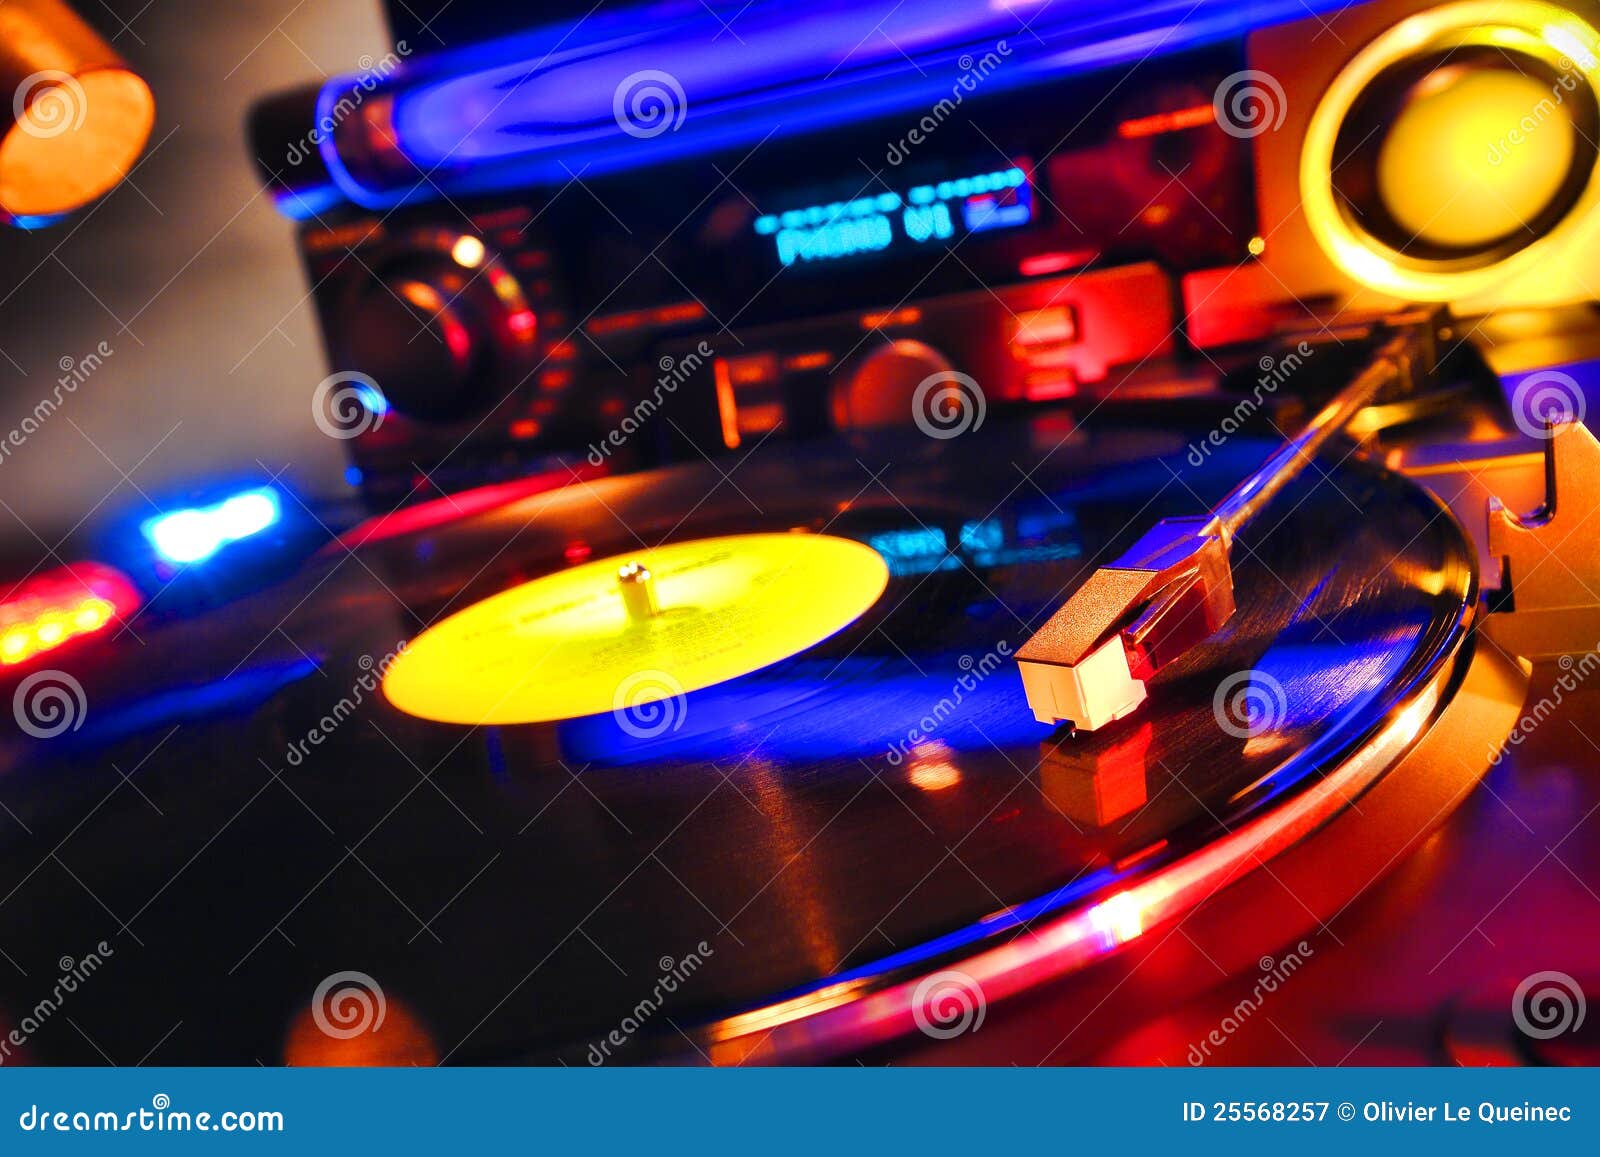 Register för vinyl för DJ-Turntable leka i dansklubba. Vinylregistret som leker varm technomusik på en ljudsignal DJ-turntable med utrustning för sound system för diskjockey i en klubba för höftdiskodans, tände i färgrika deltagarelampaeffekter